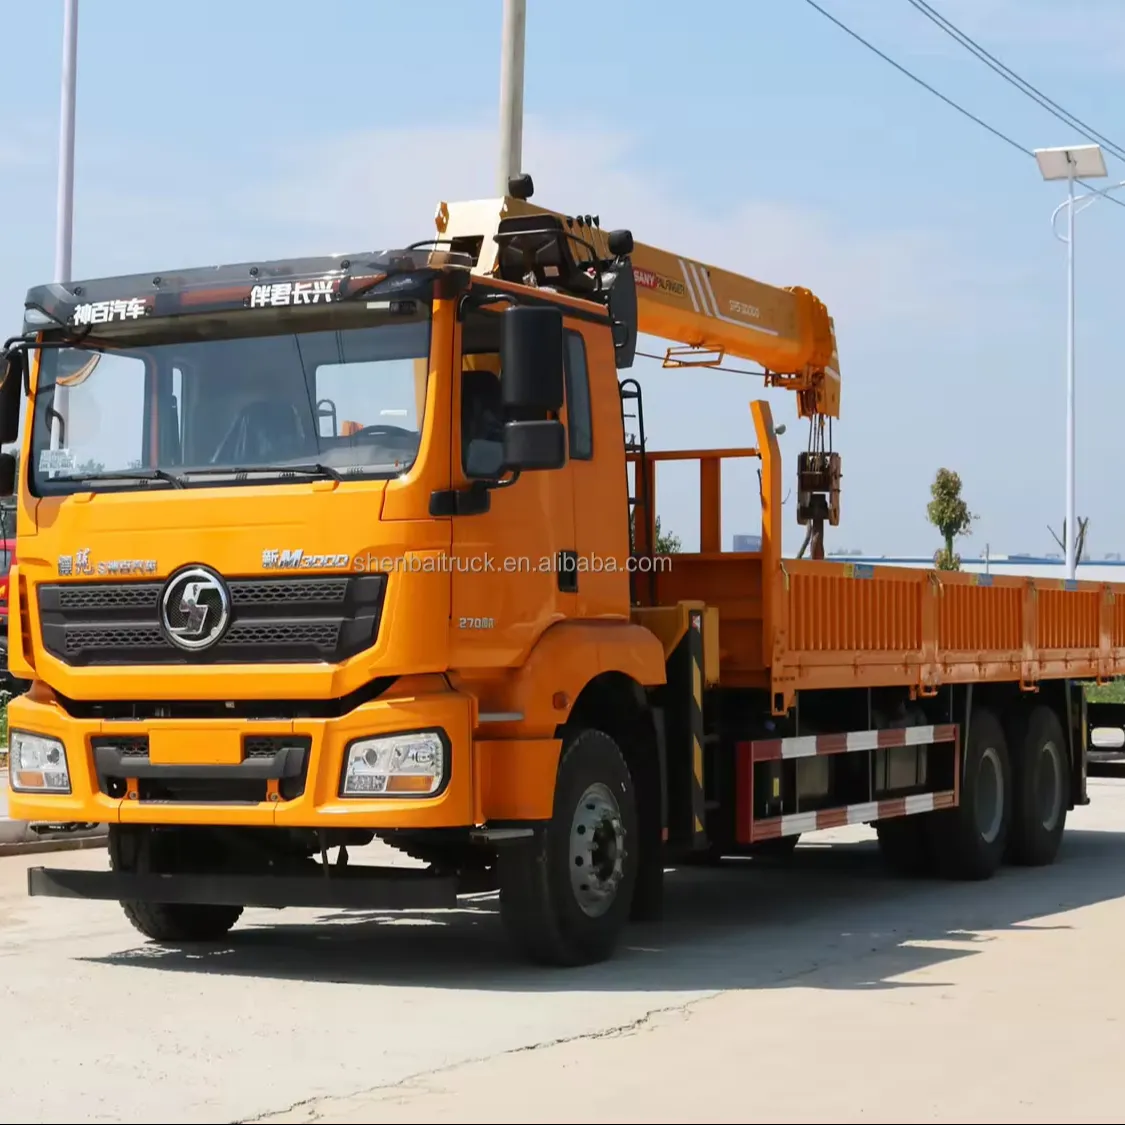 شاحنة شحن Shacman 6x4 LHD/RHD مع رافعة يد رافعة هيدروليكية بوزن 12 طن 14 طن 16 طن للبيع من المصدر الصيني